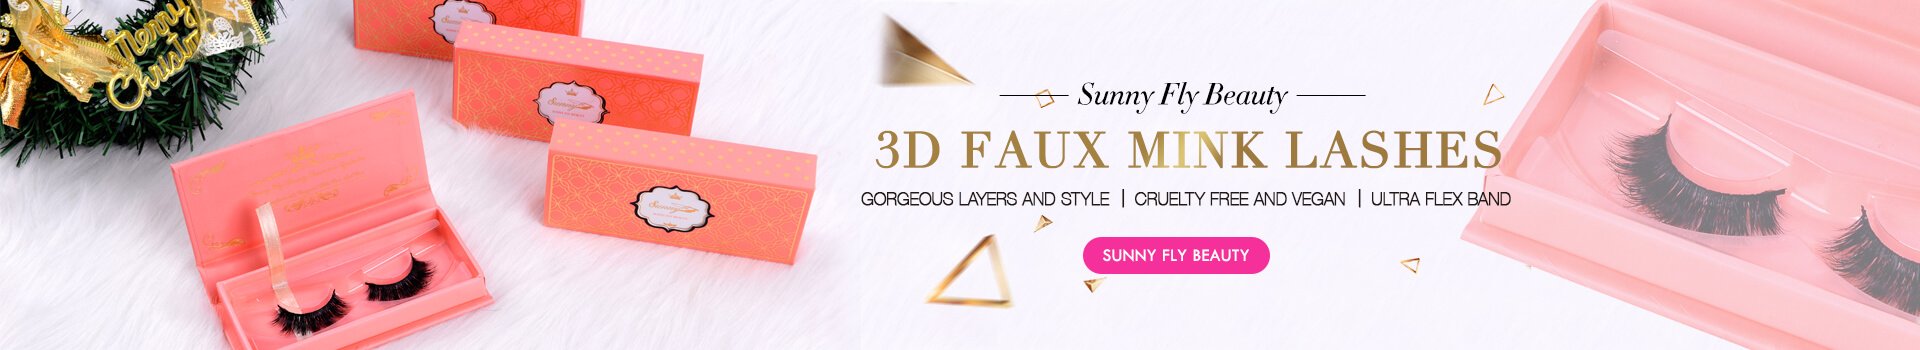 3D Faux Mink Lashes SD63